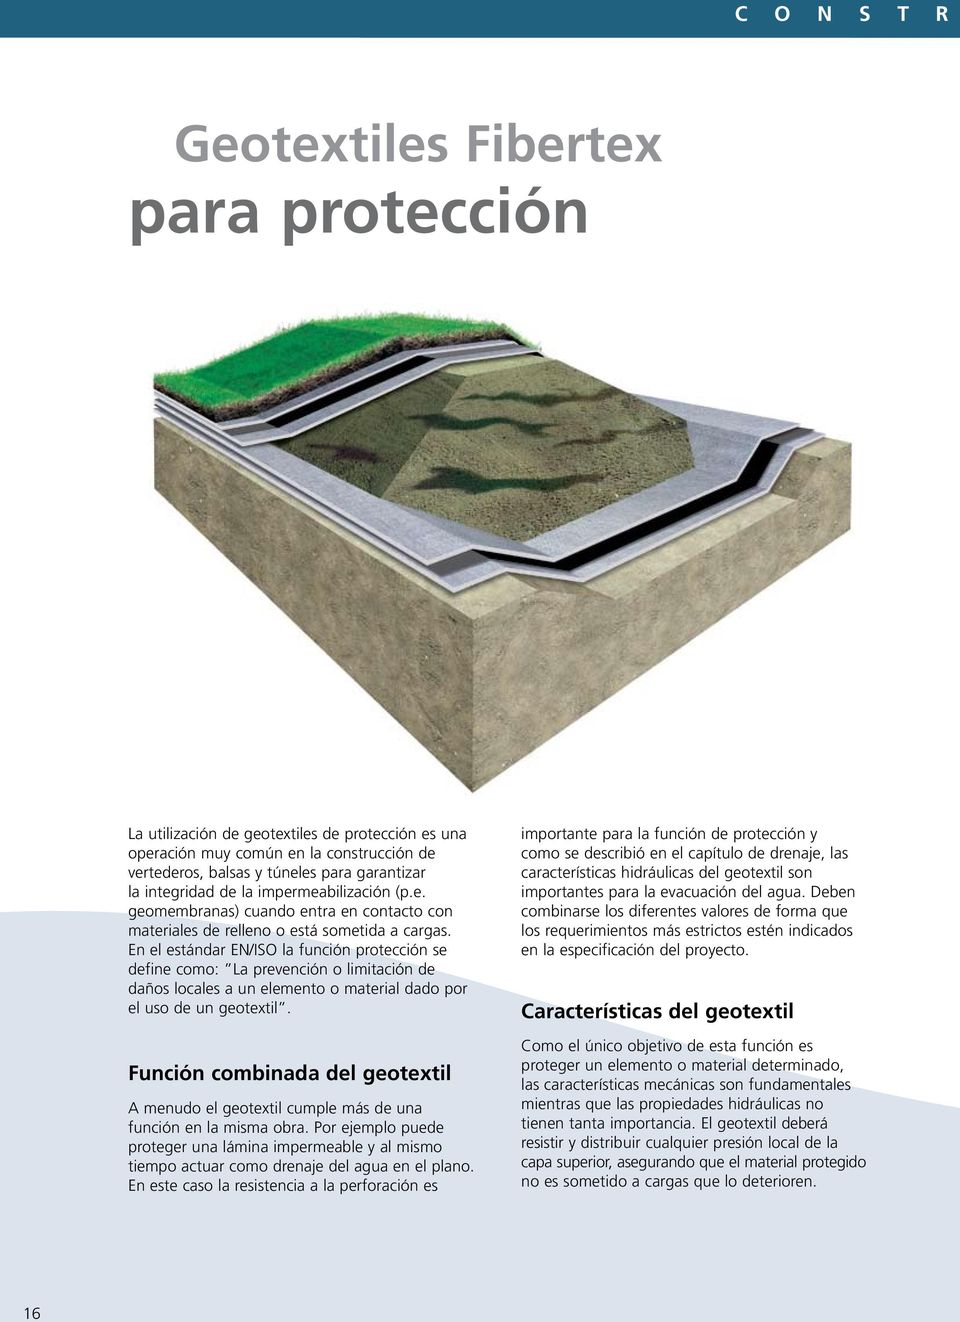 En el estándar EN/ISO la función protección se define como: La prevención o limitación de daños locales a un elemento o material dado por el uso de un geotextil.